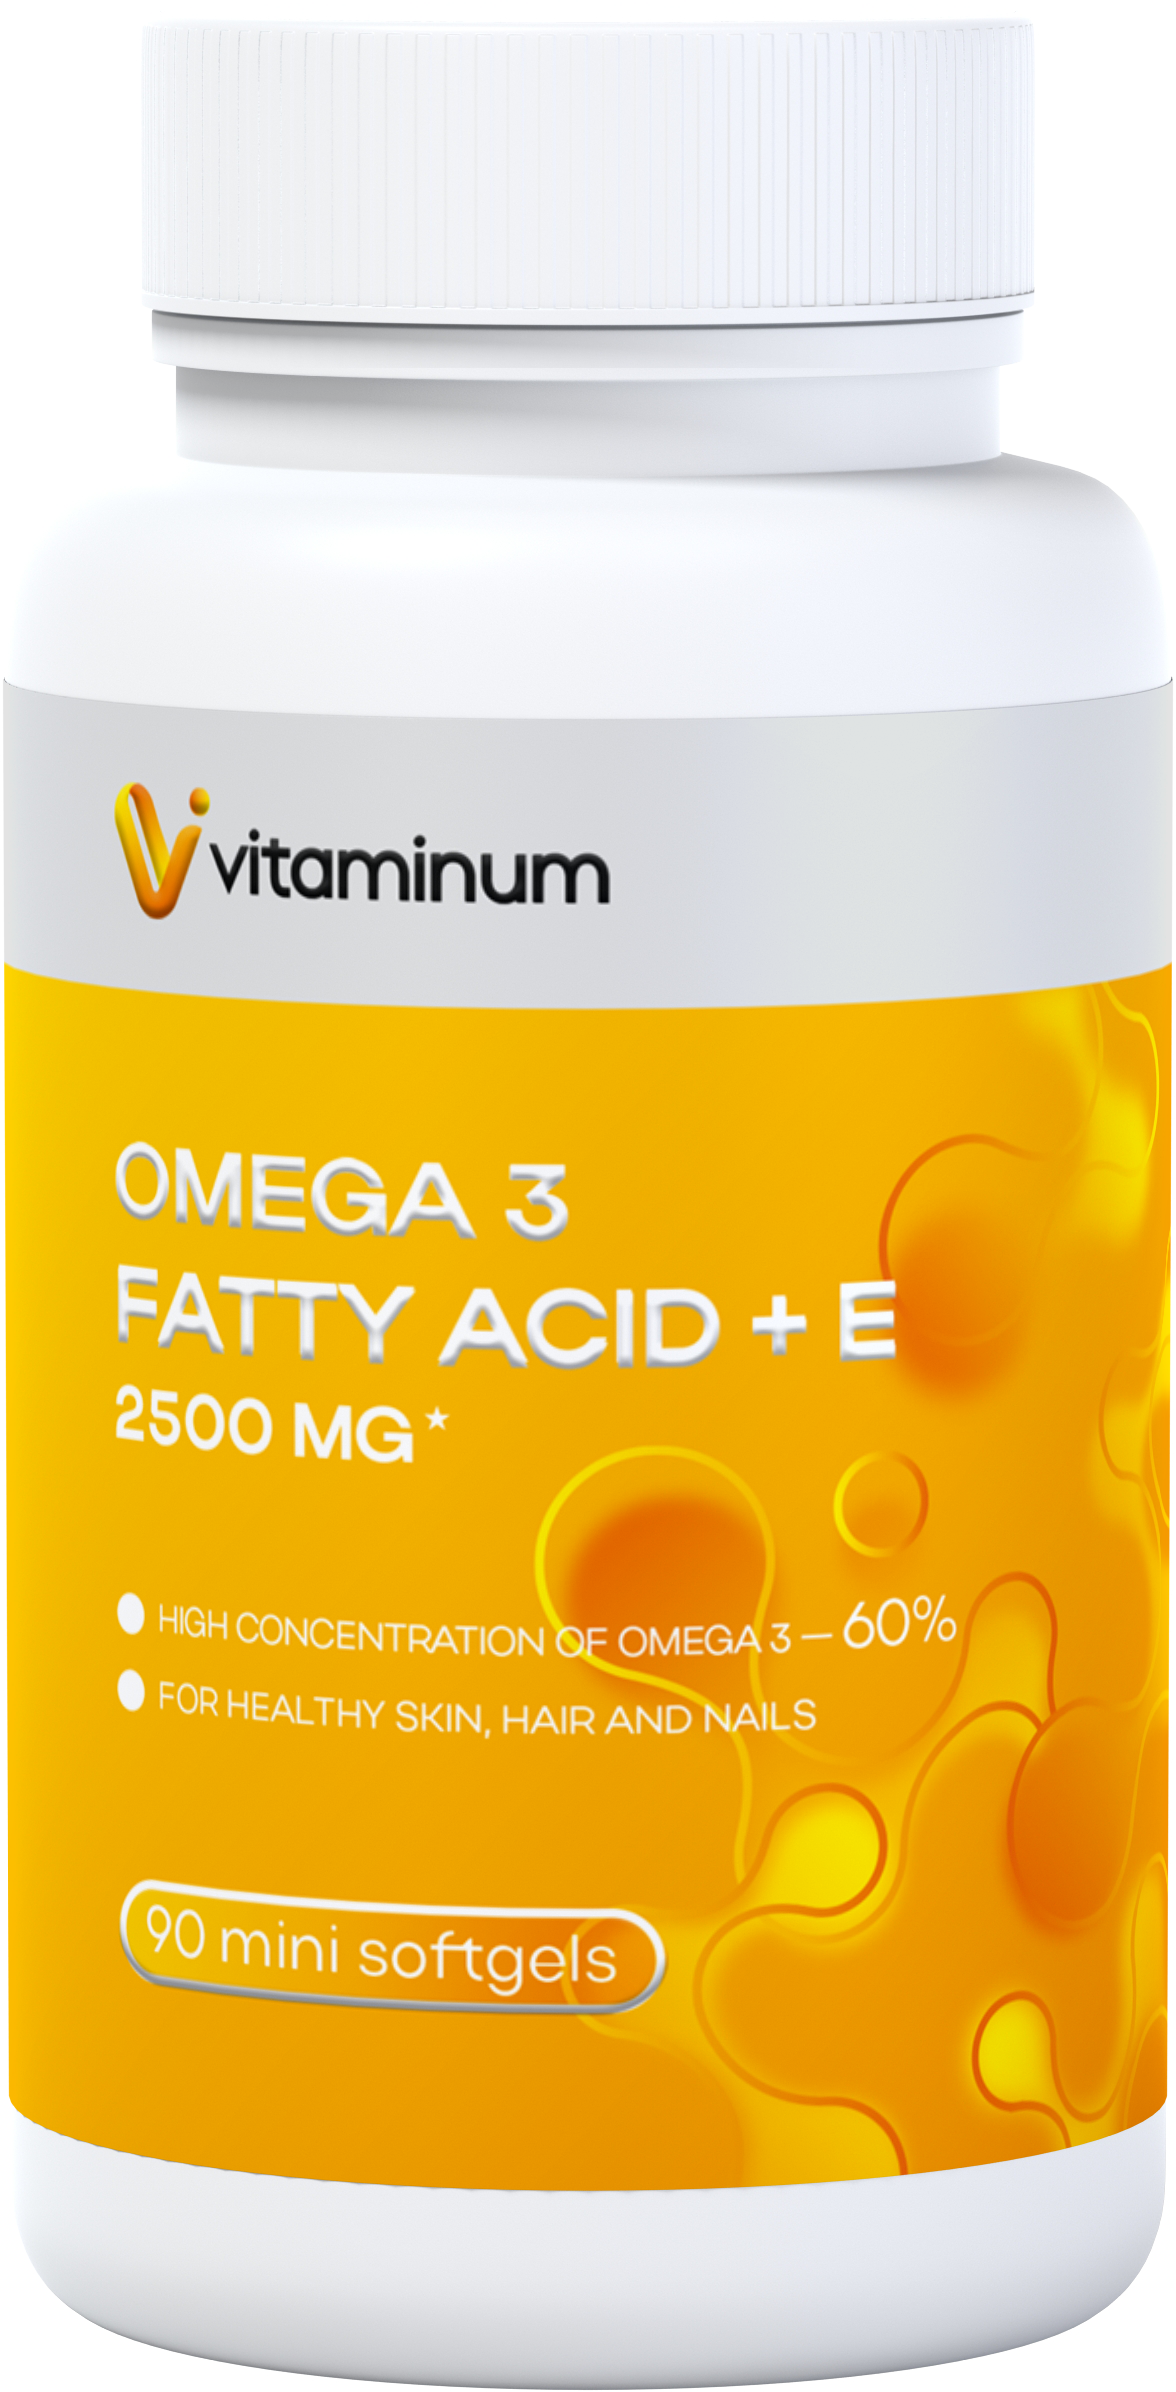  Vitaminum ОМЕГА 3 60% + витамин Е (2500 MG*) 90 капсул 700 мг   в Когалыме